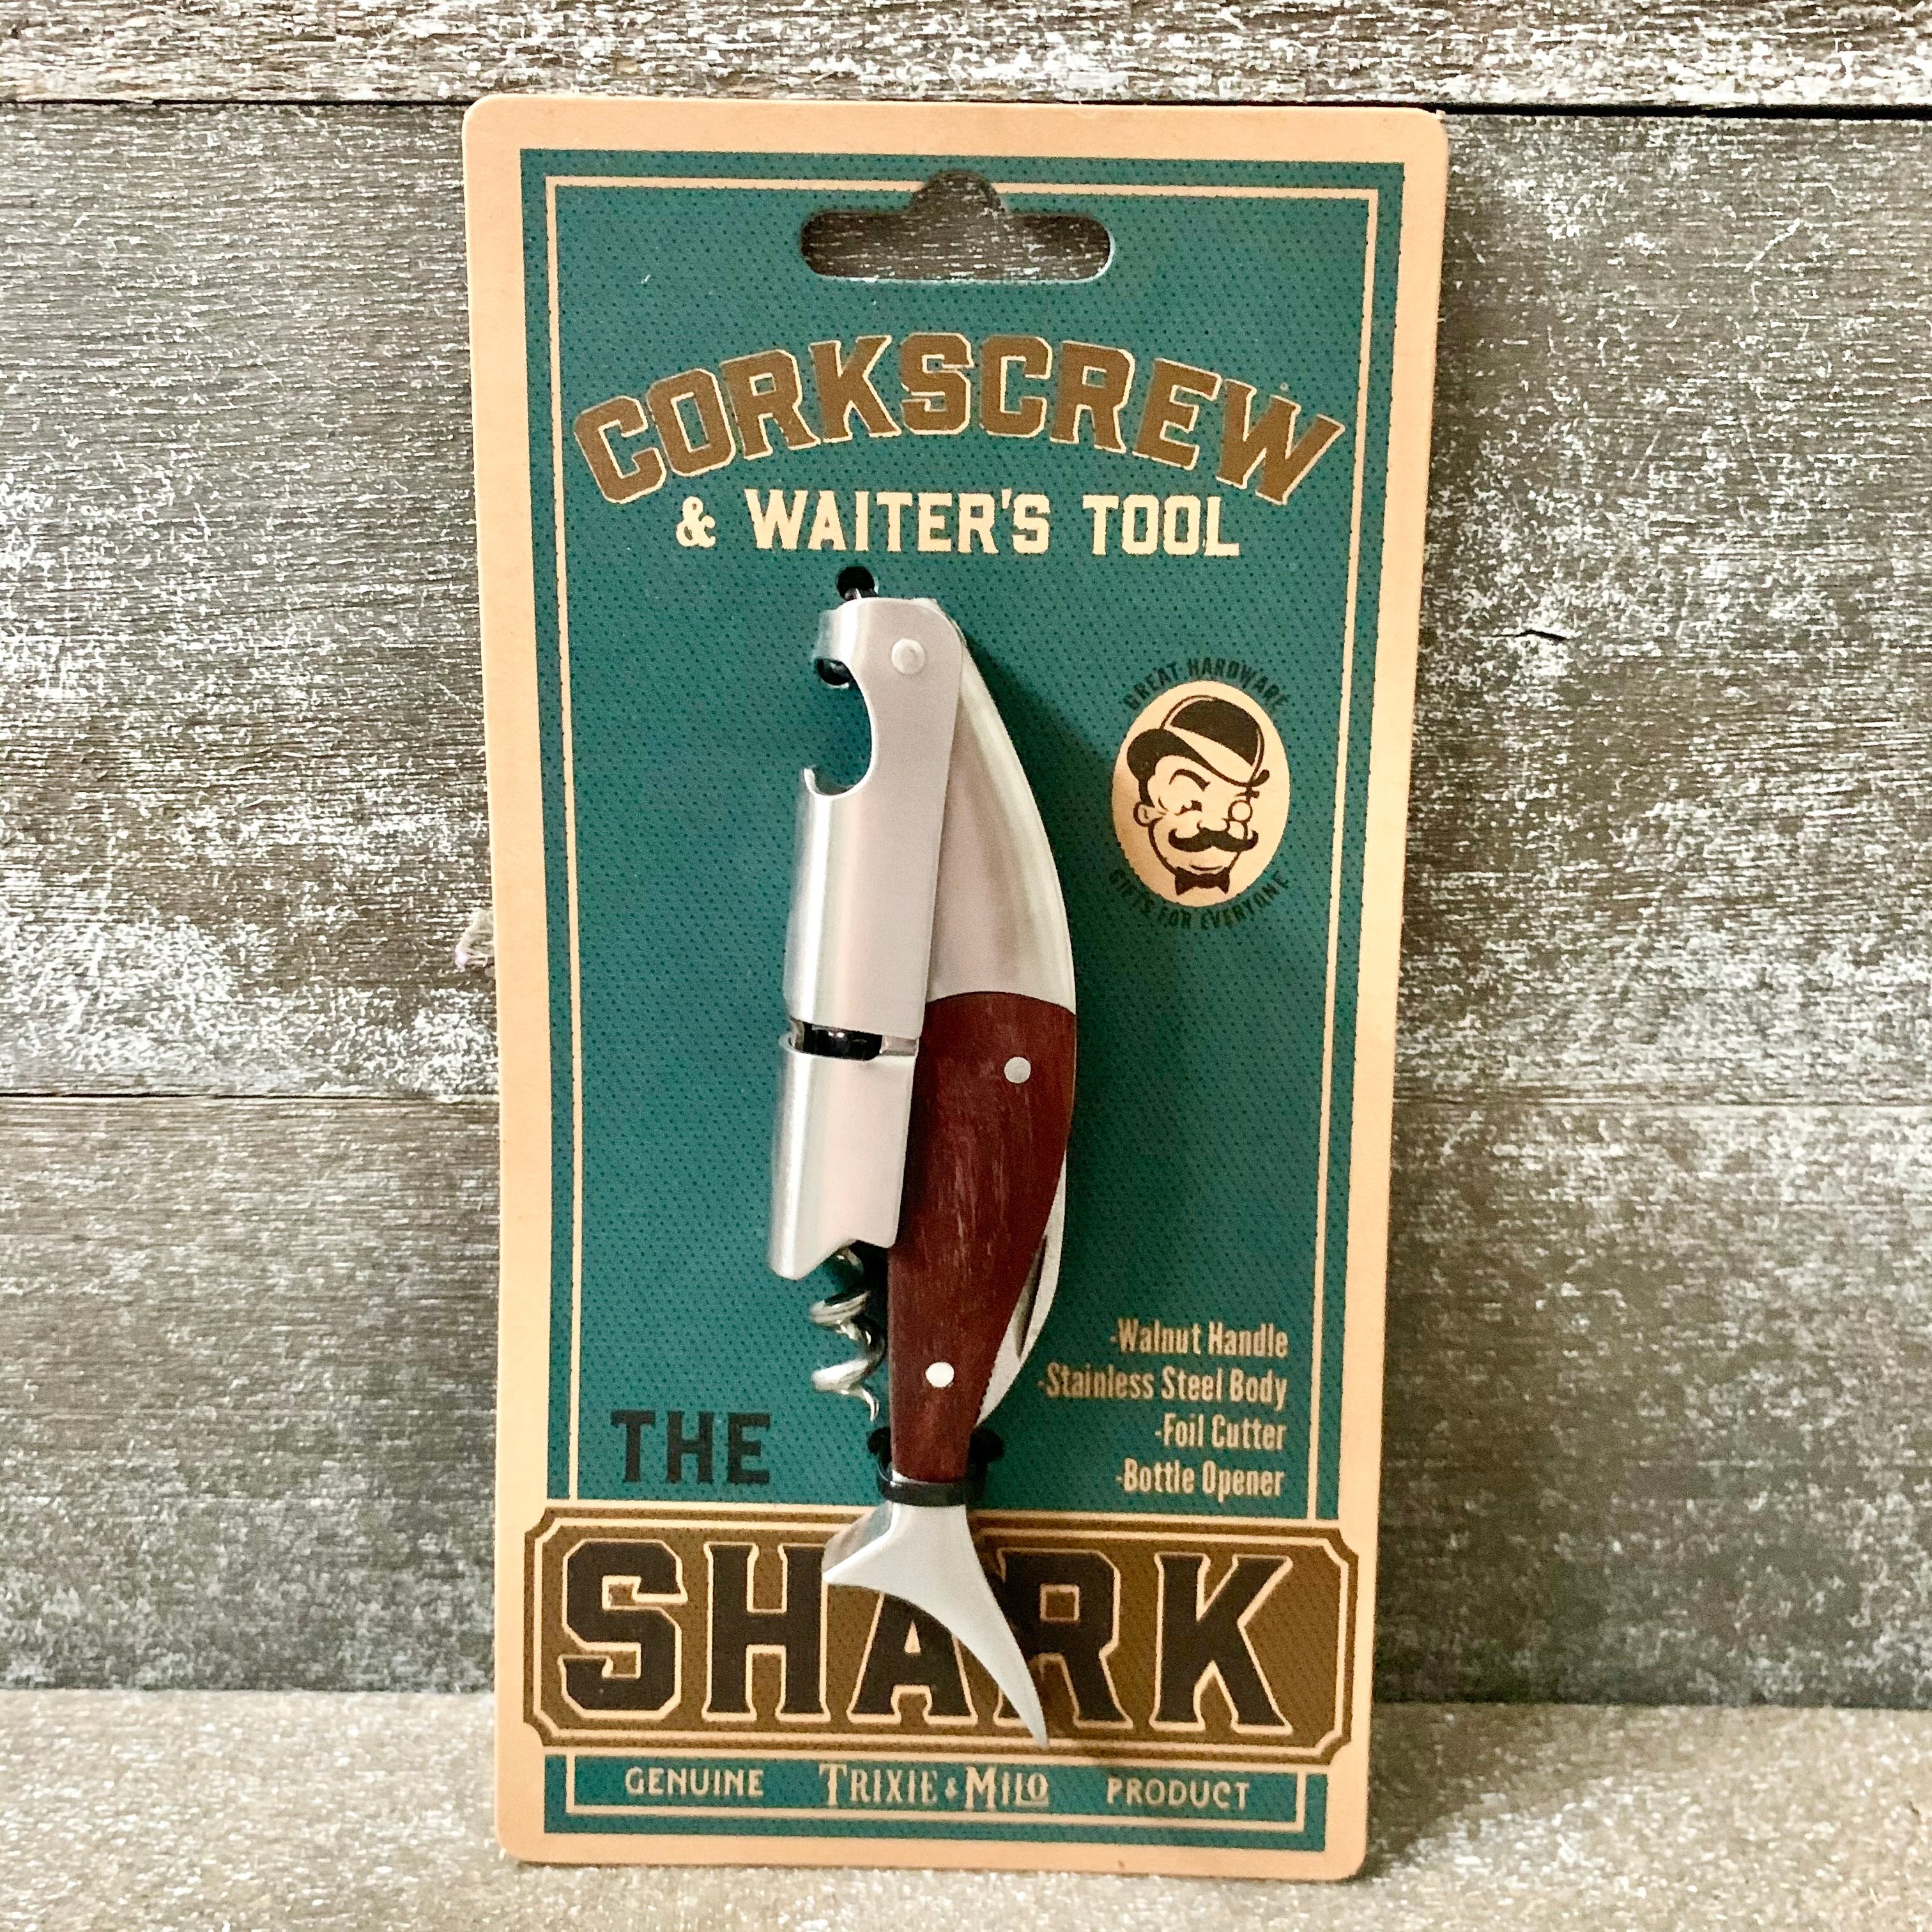 The Shark Corkscrew & Waiter Tool